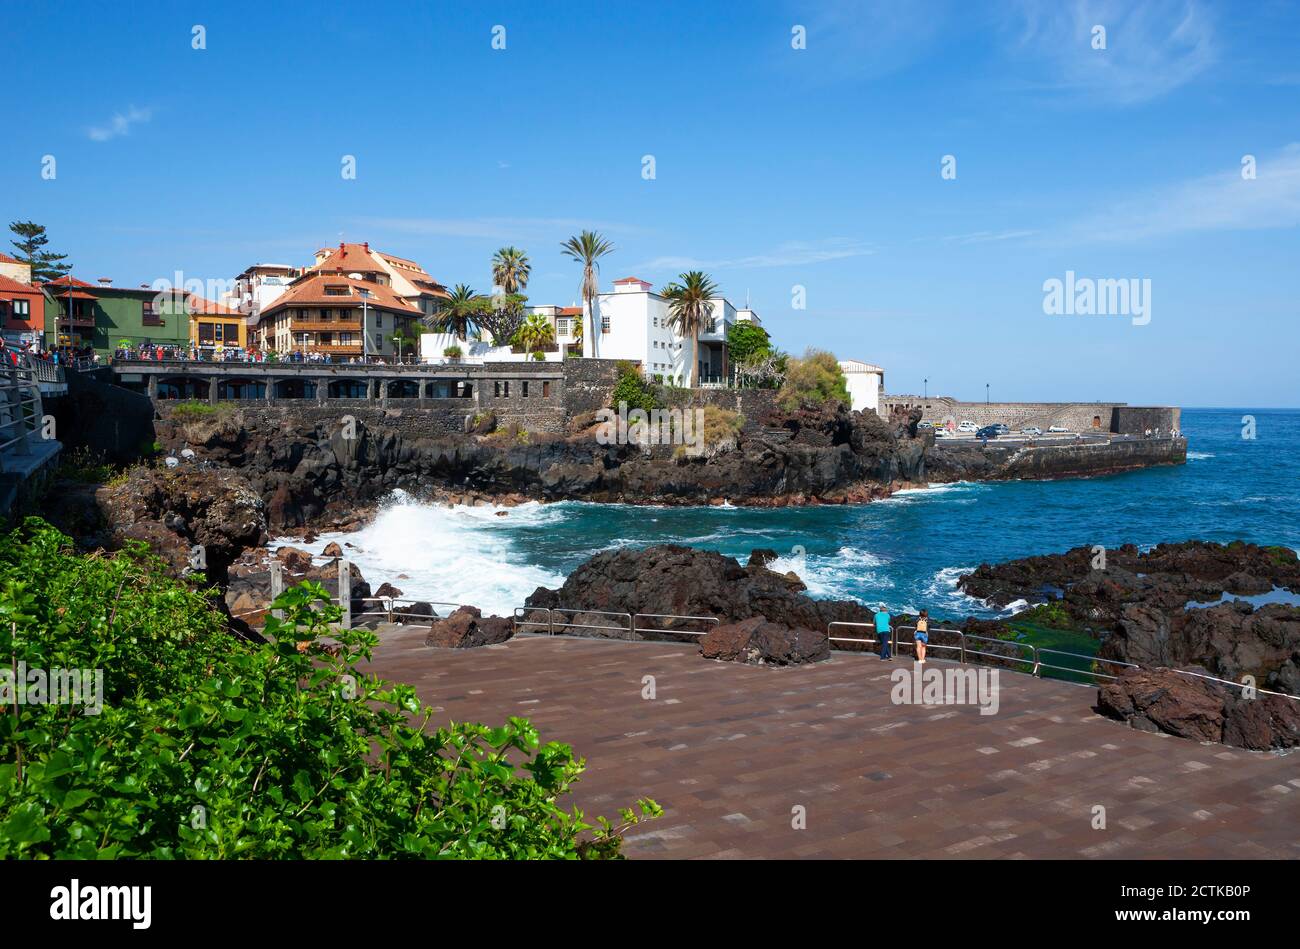 Spain, Canary Islands, Puerto de la Cruz, Punta del Viento promenade in summer Stock Photo